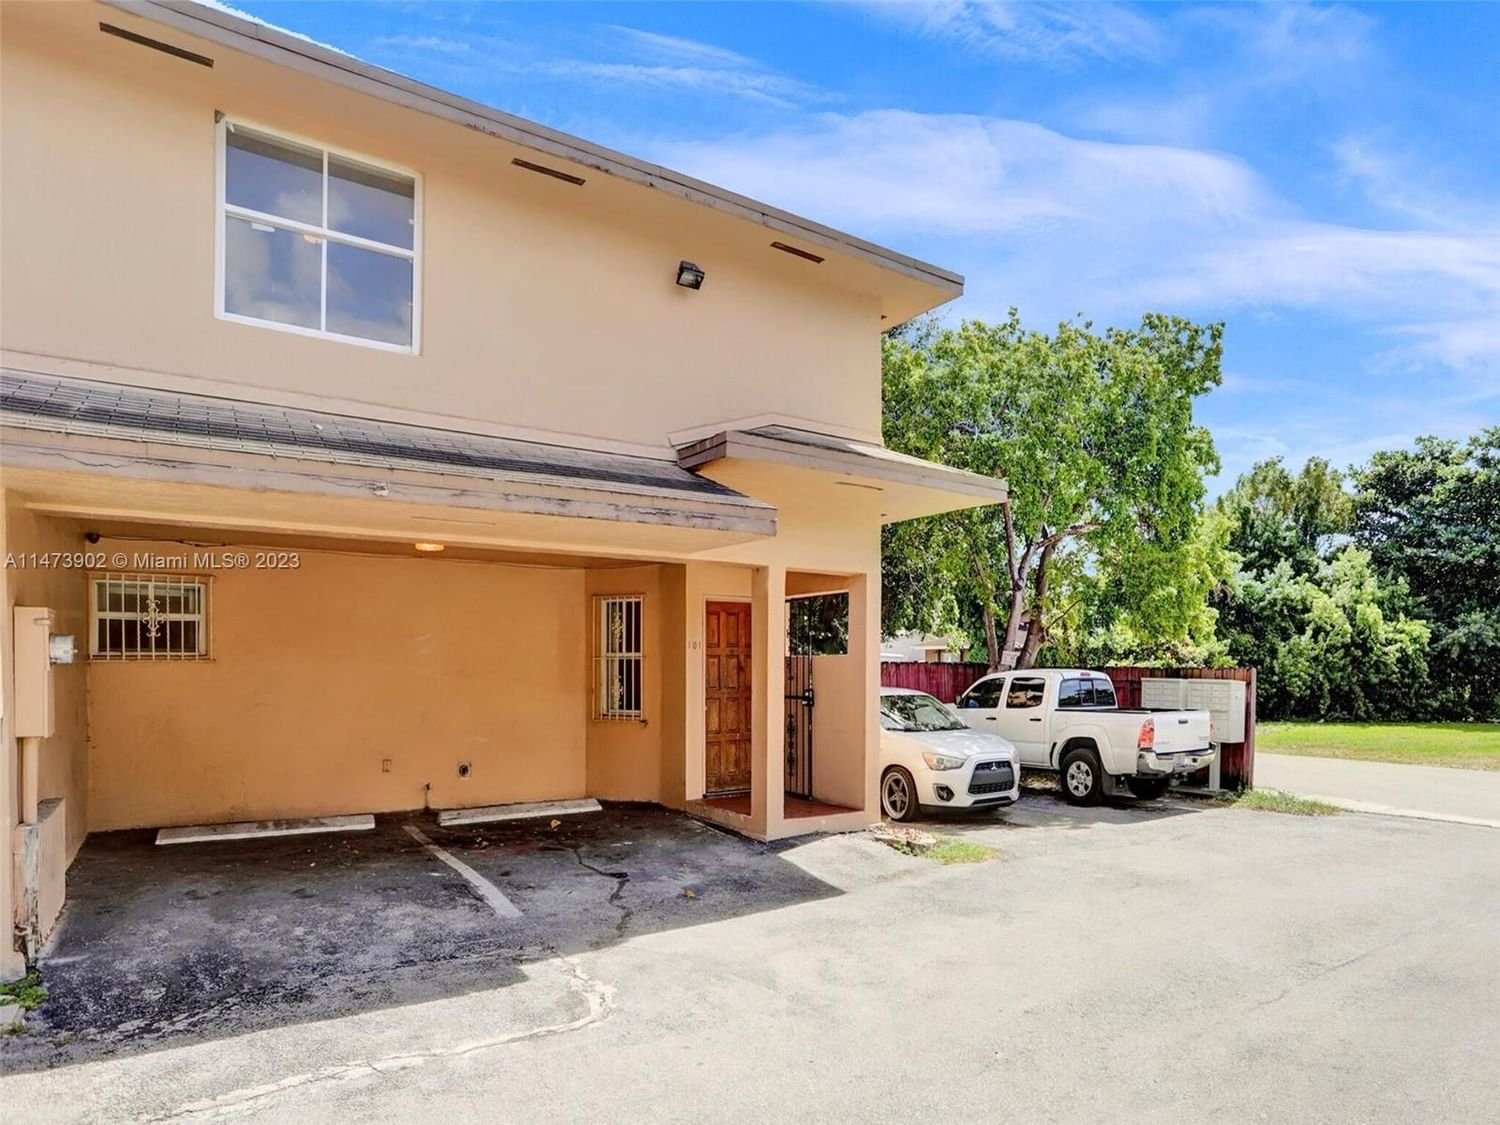 Real estate property located at 451 136th St I-101, Miami-Dade County, MOUNTCLAIR VILLAS CONDO, North Miami, FL